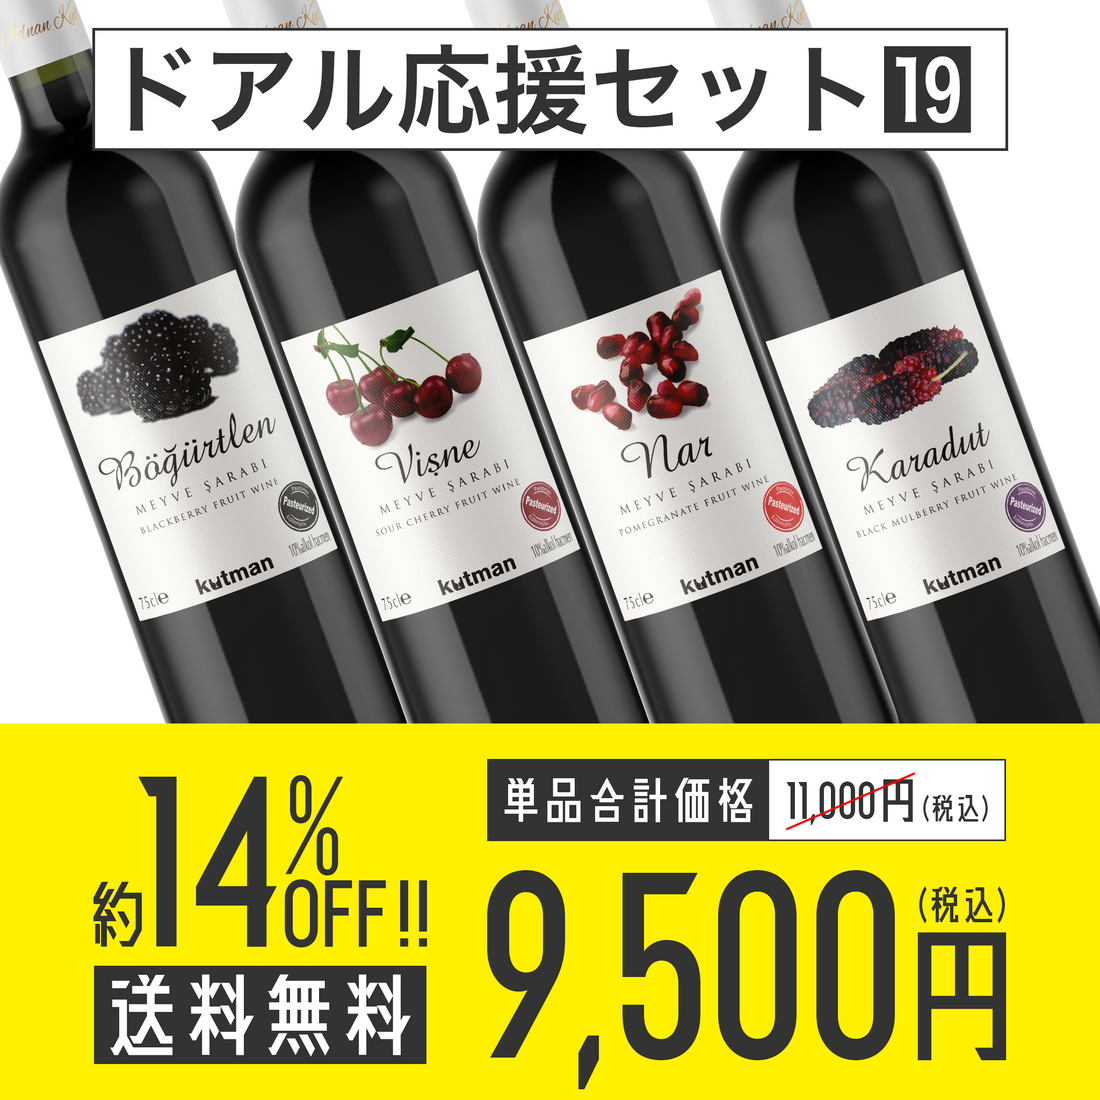 【送料無料】ドアル応援セット No.19 Kutman Wine フルーツワイン4種各1本セット